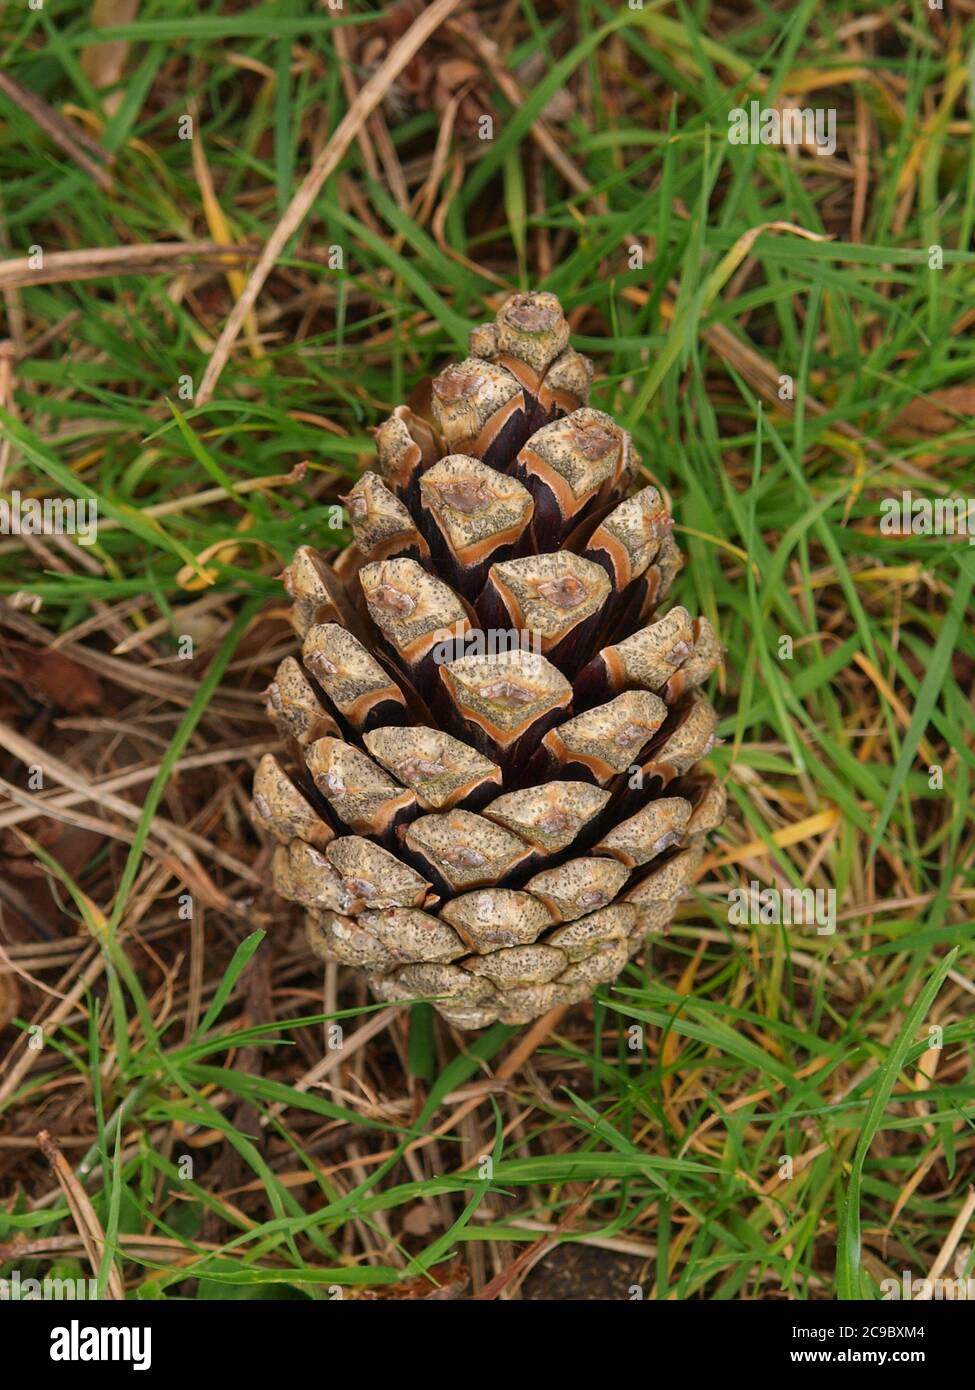 Pine cone in Grass Stock Photo